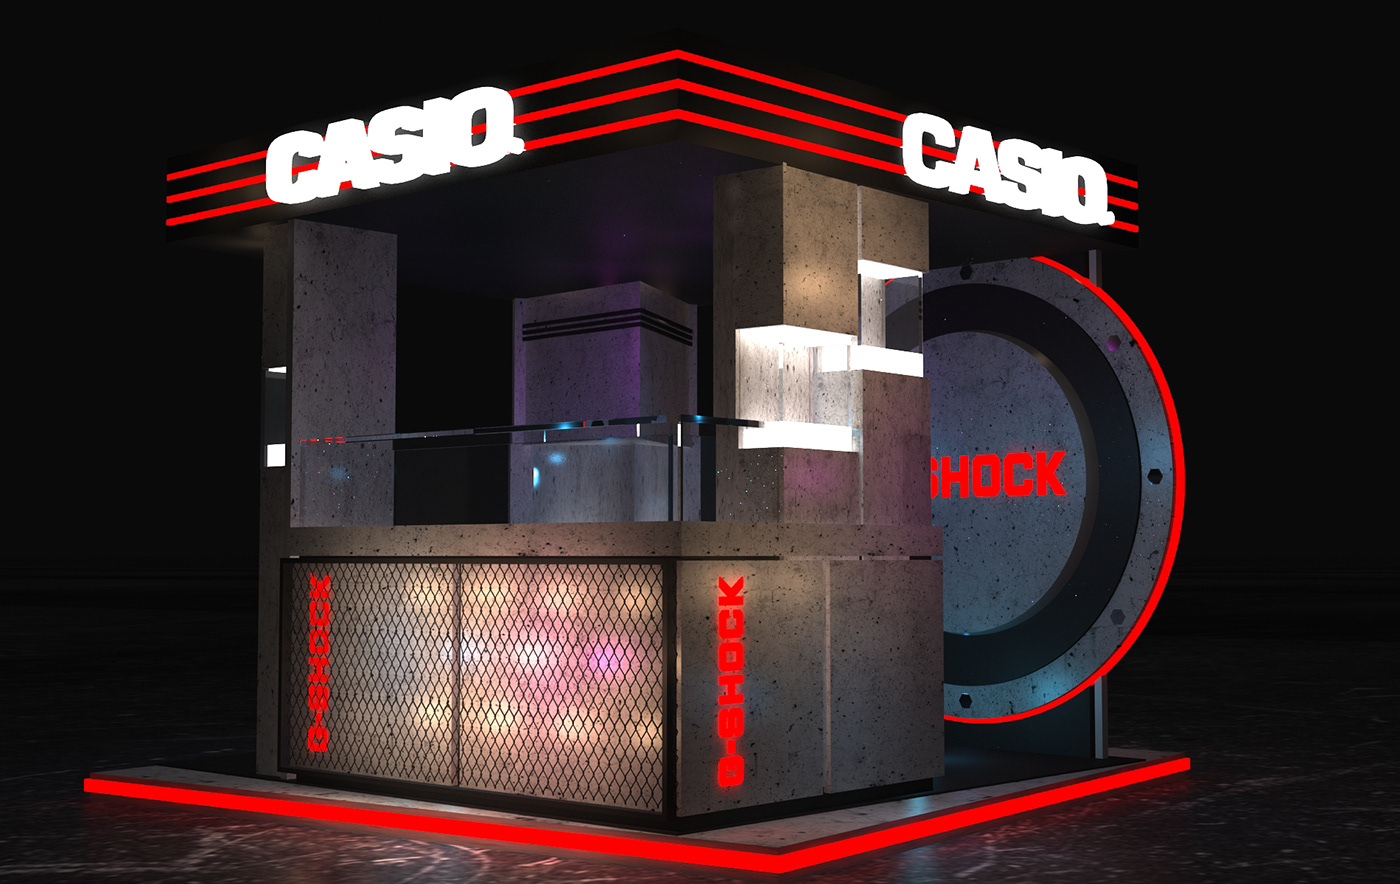 booth design Stand exhbo neon watch designstand standdesign Casio